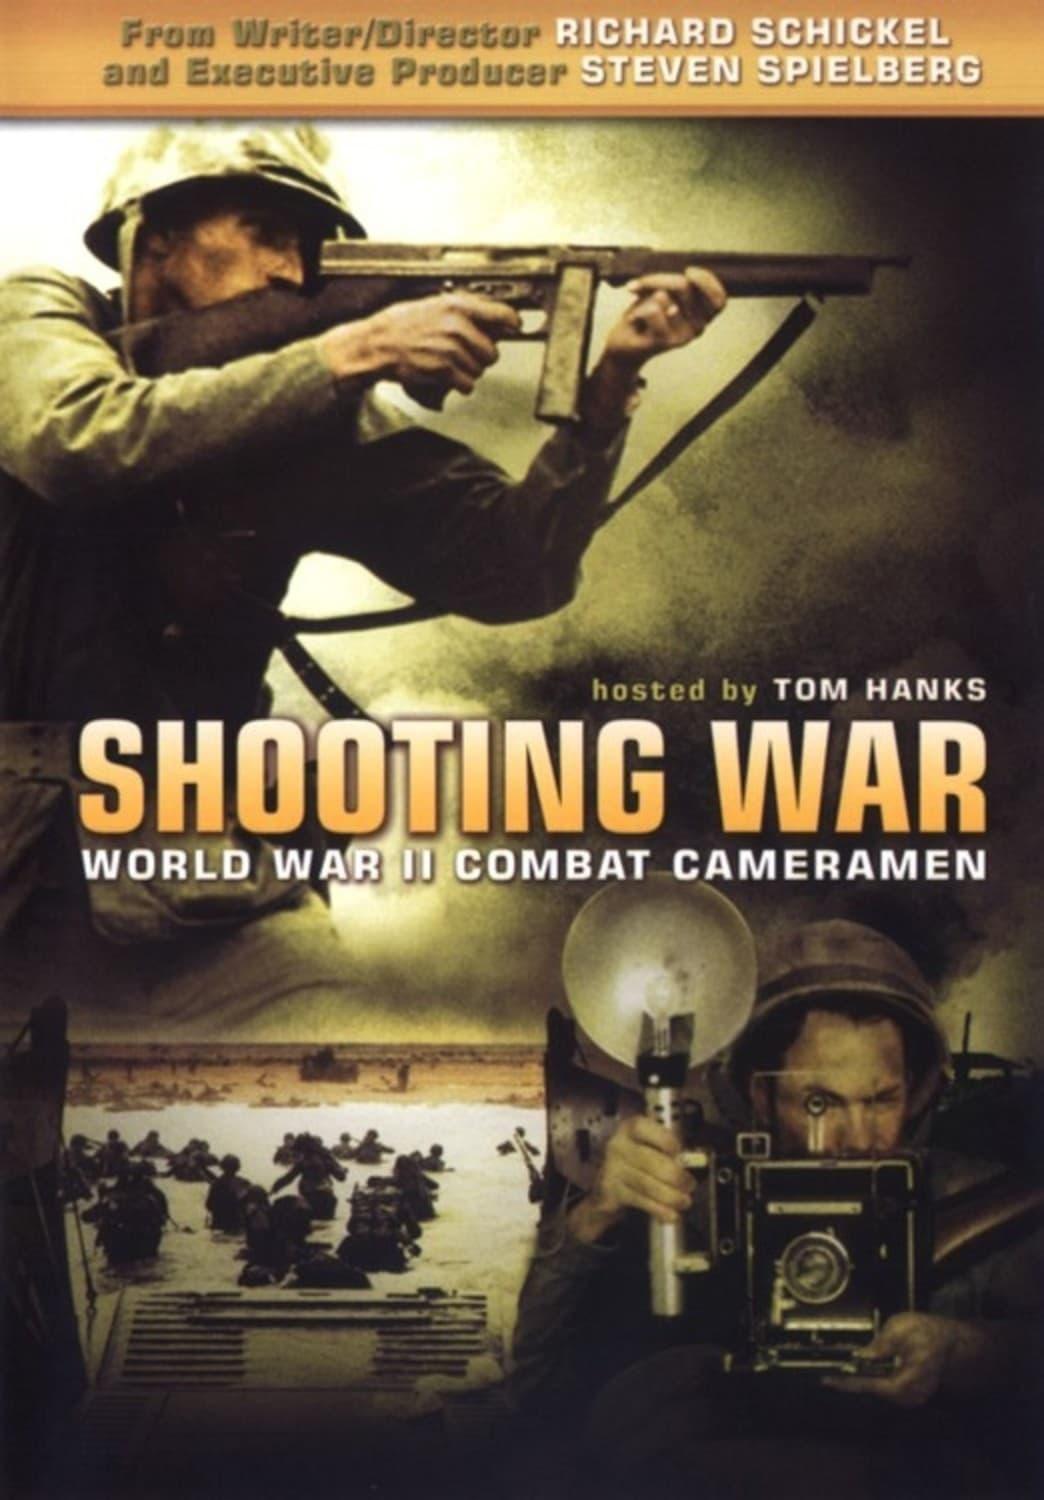 Shooting War poster